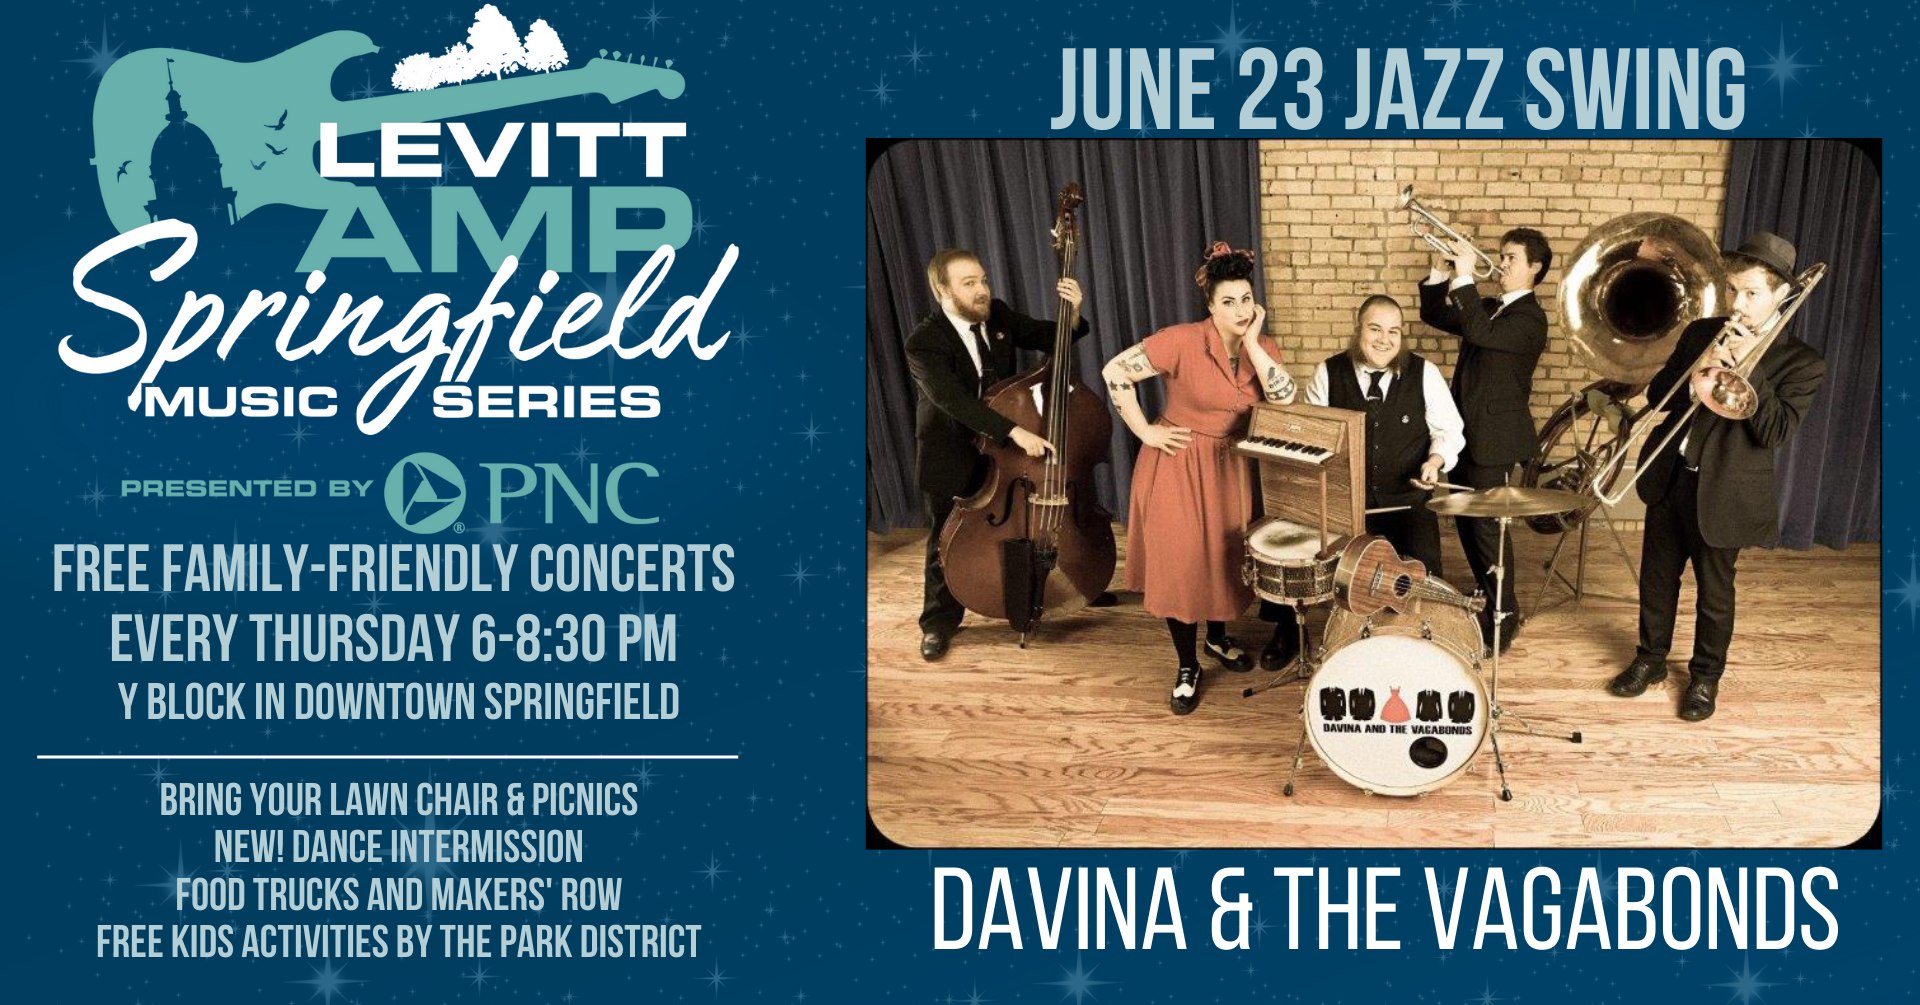 June 23 Jazz Swing Davina and the Vagabonds